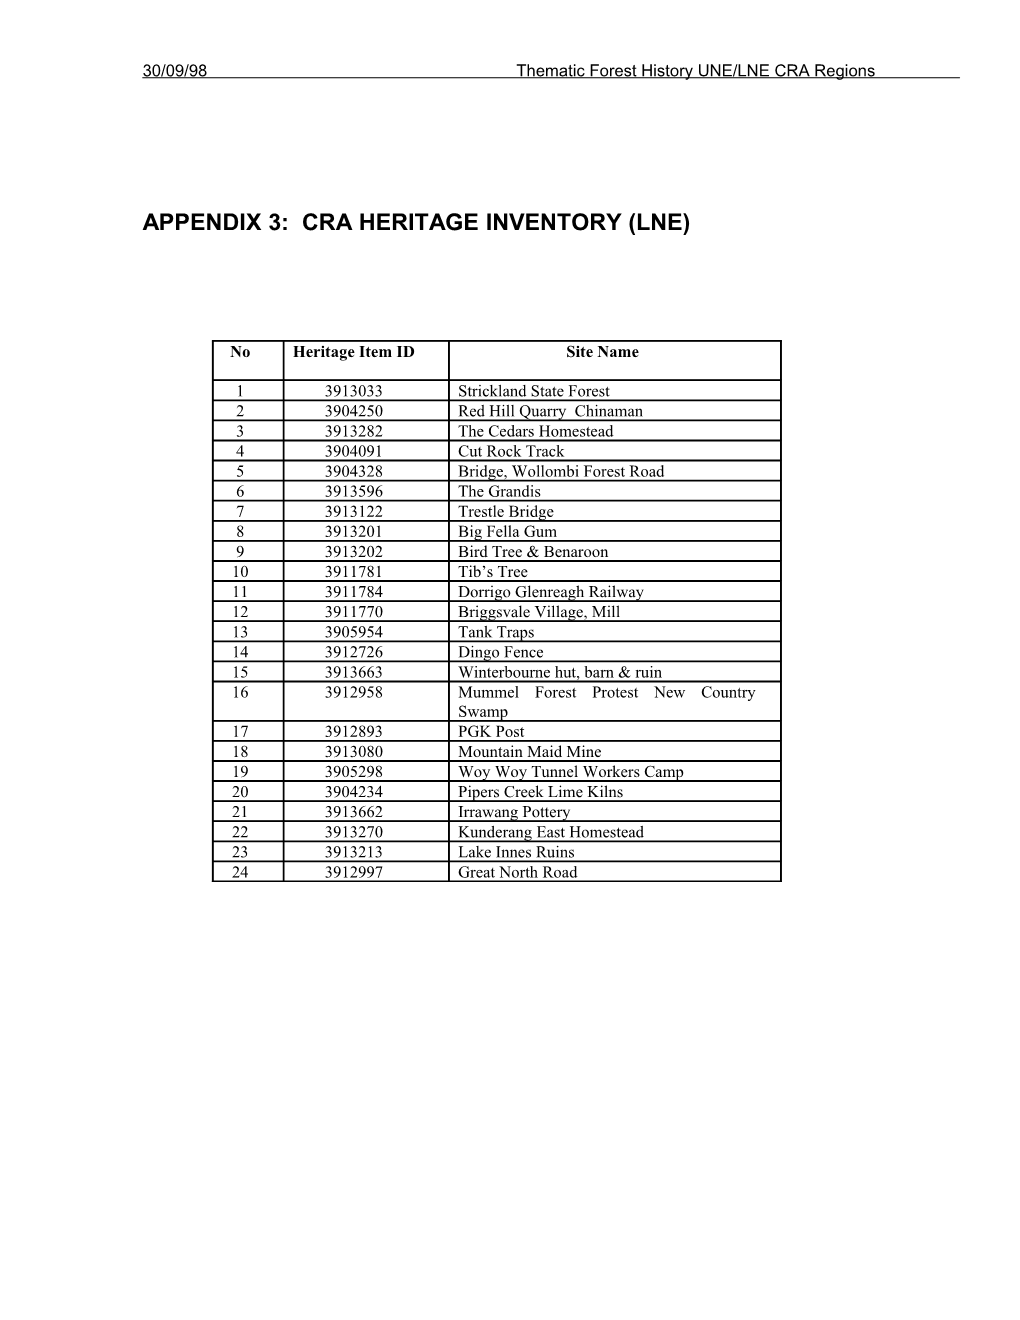 CRA Heritage Inventory (LNE)